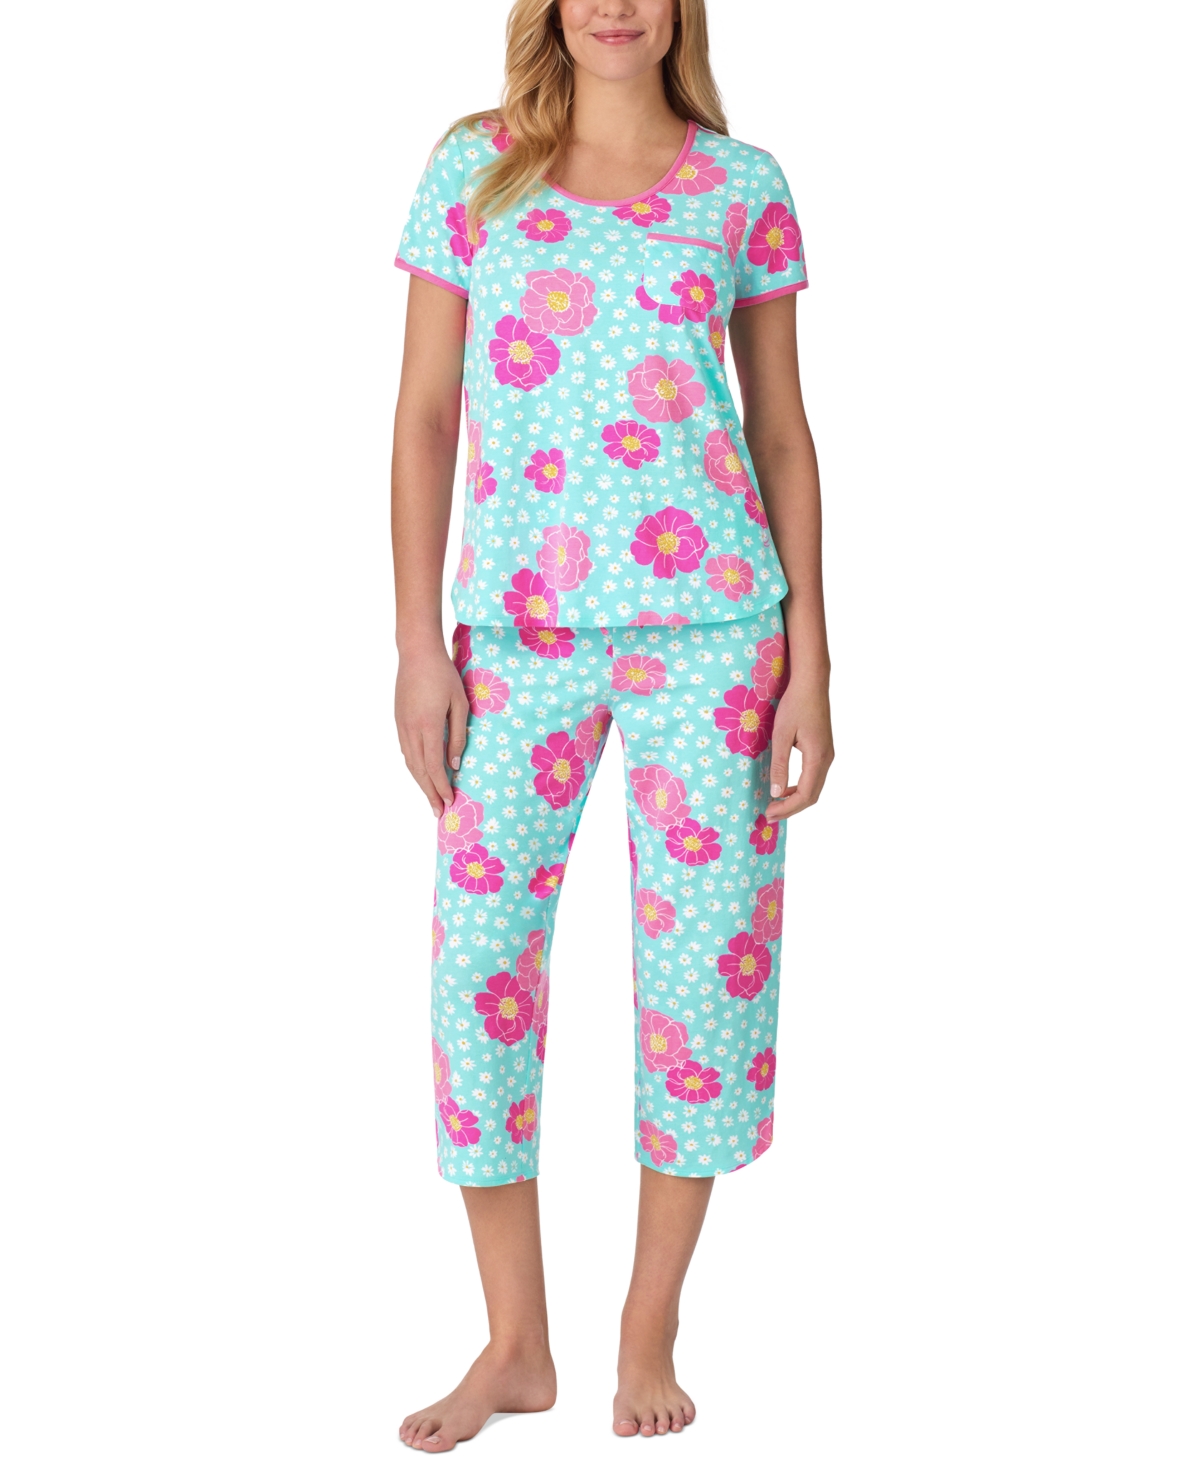 Women's 2-Pc. Printed Cropped Pajamas Set - Pink Multi